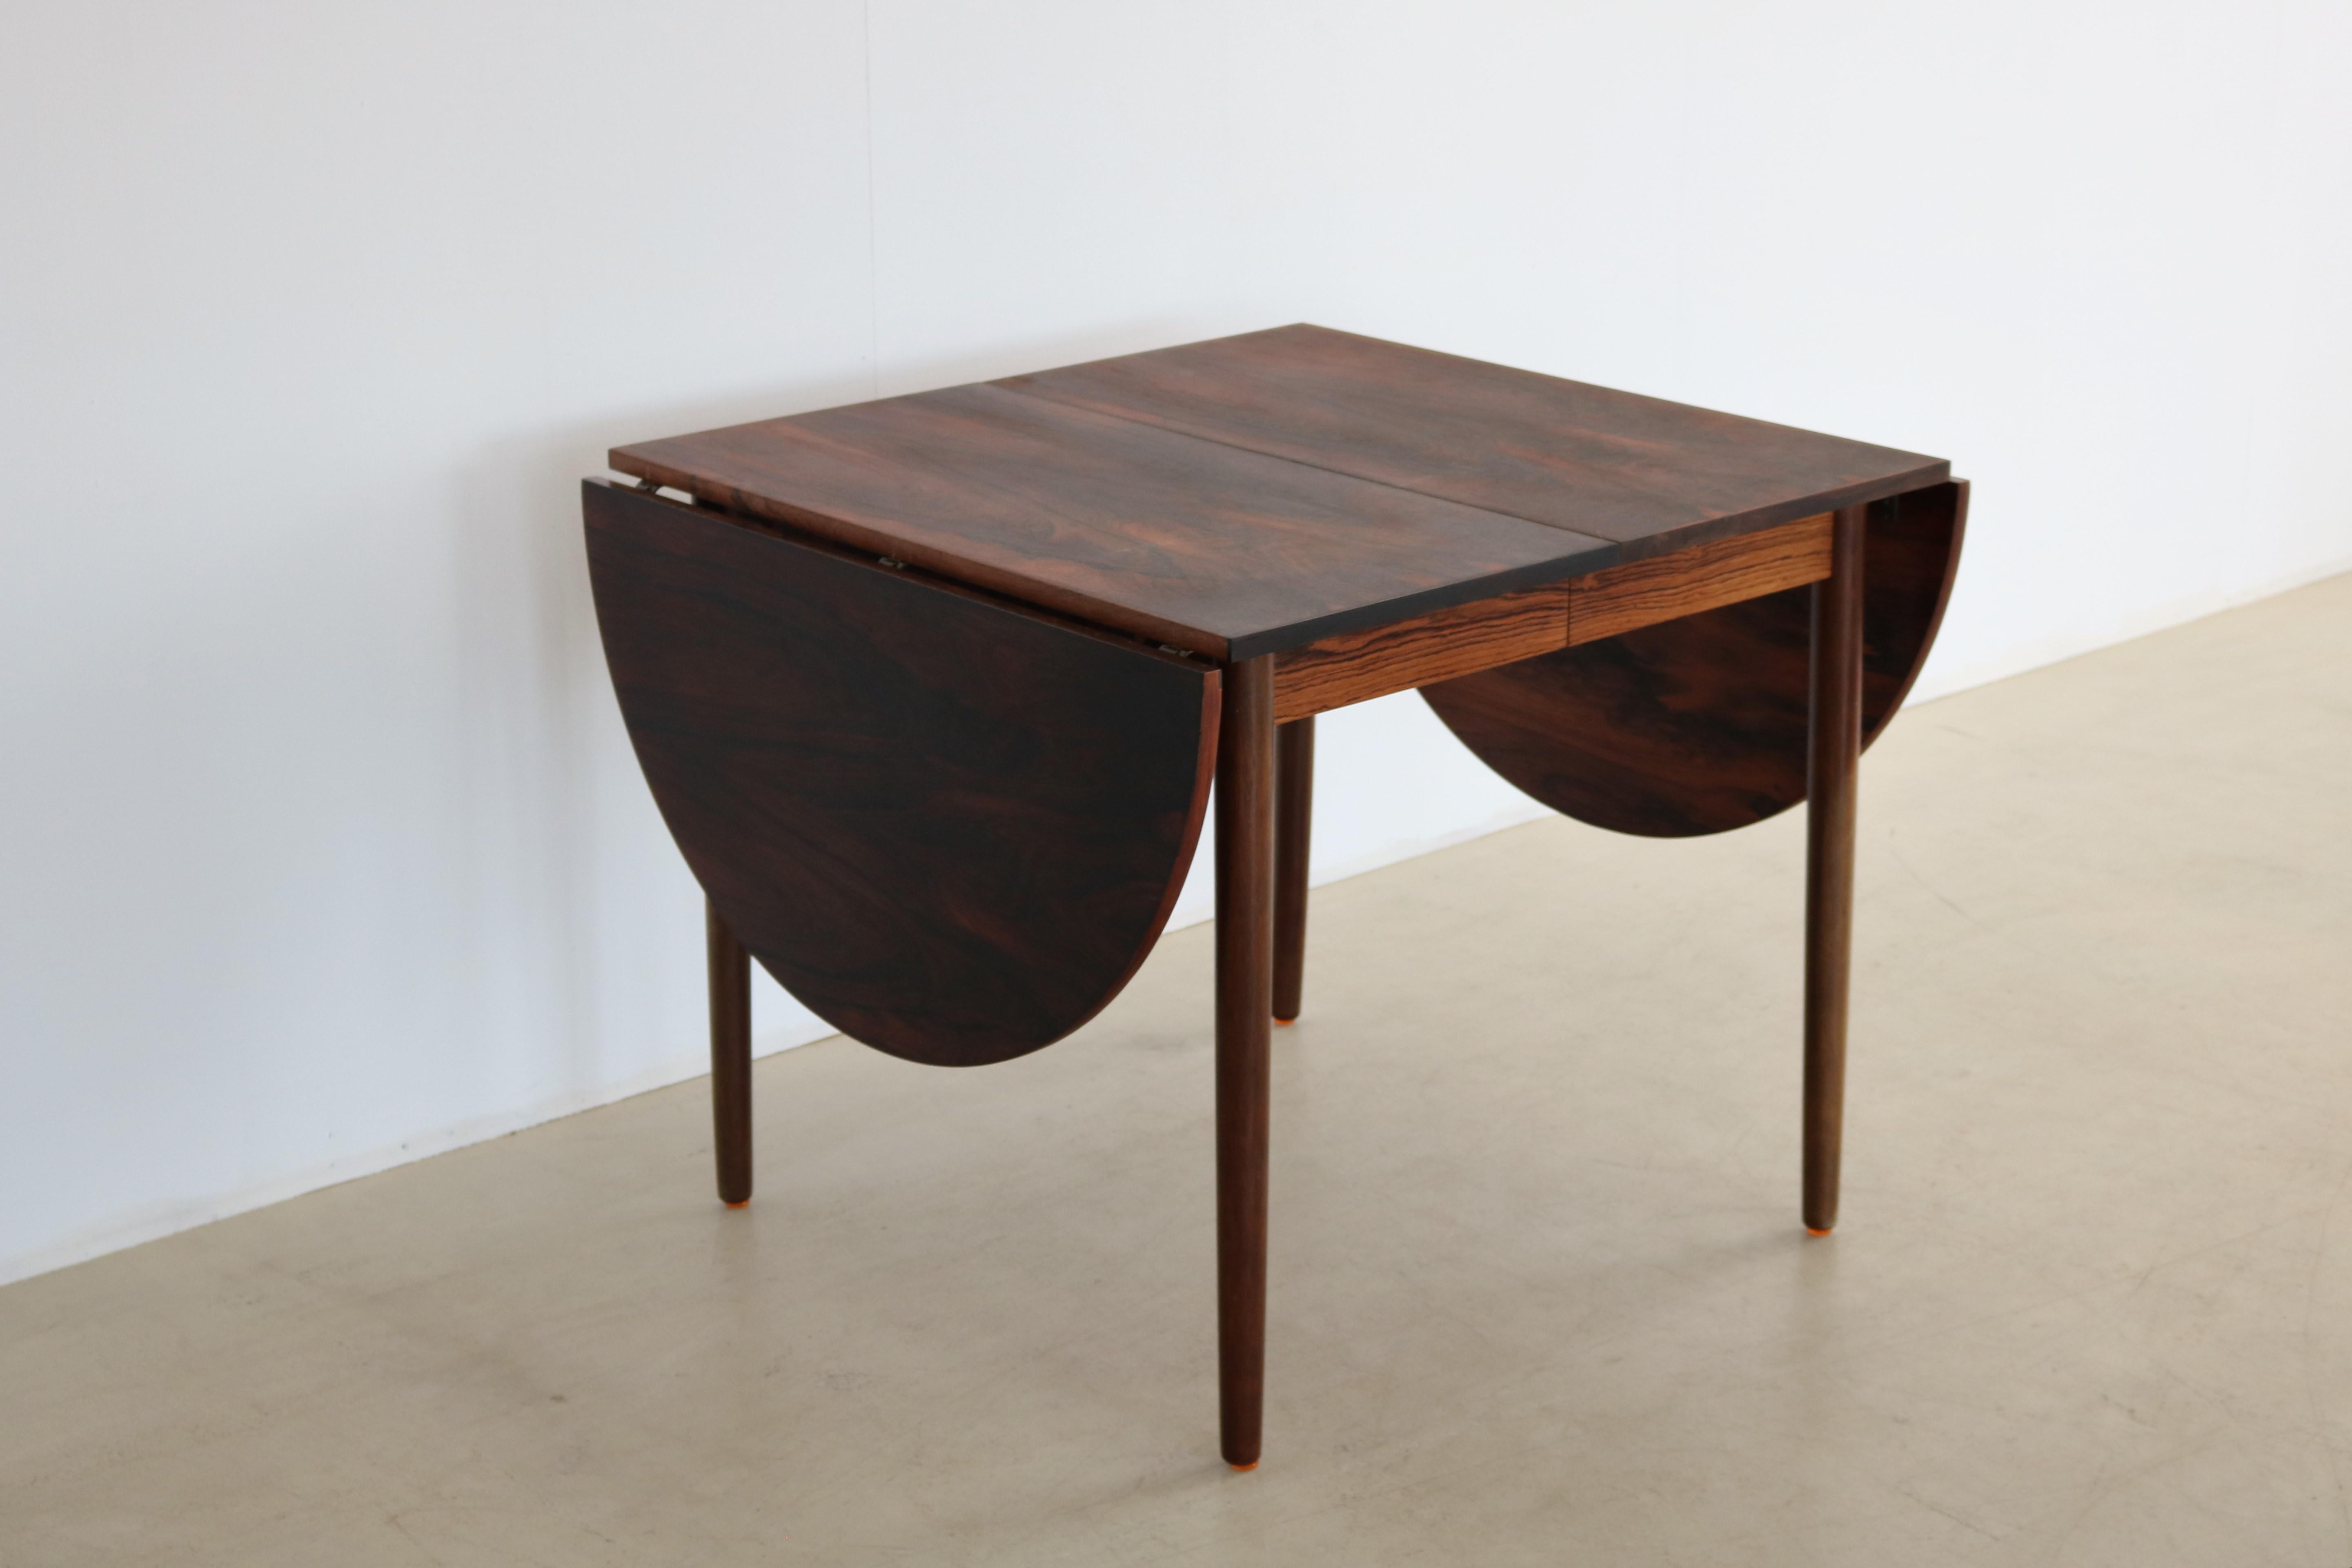 Table de salle à manger vintage table extensible 1960s Danish 

Période 1960
Designs Fabricant de meubles danois Danemark
Conditions bonnes signes légers d'utilisation
Taille 73 x 73 x 85 (hxwxd) + 2x hémisphère de 43 + 2x feuille d'insertion